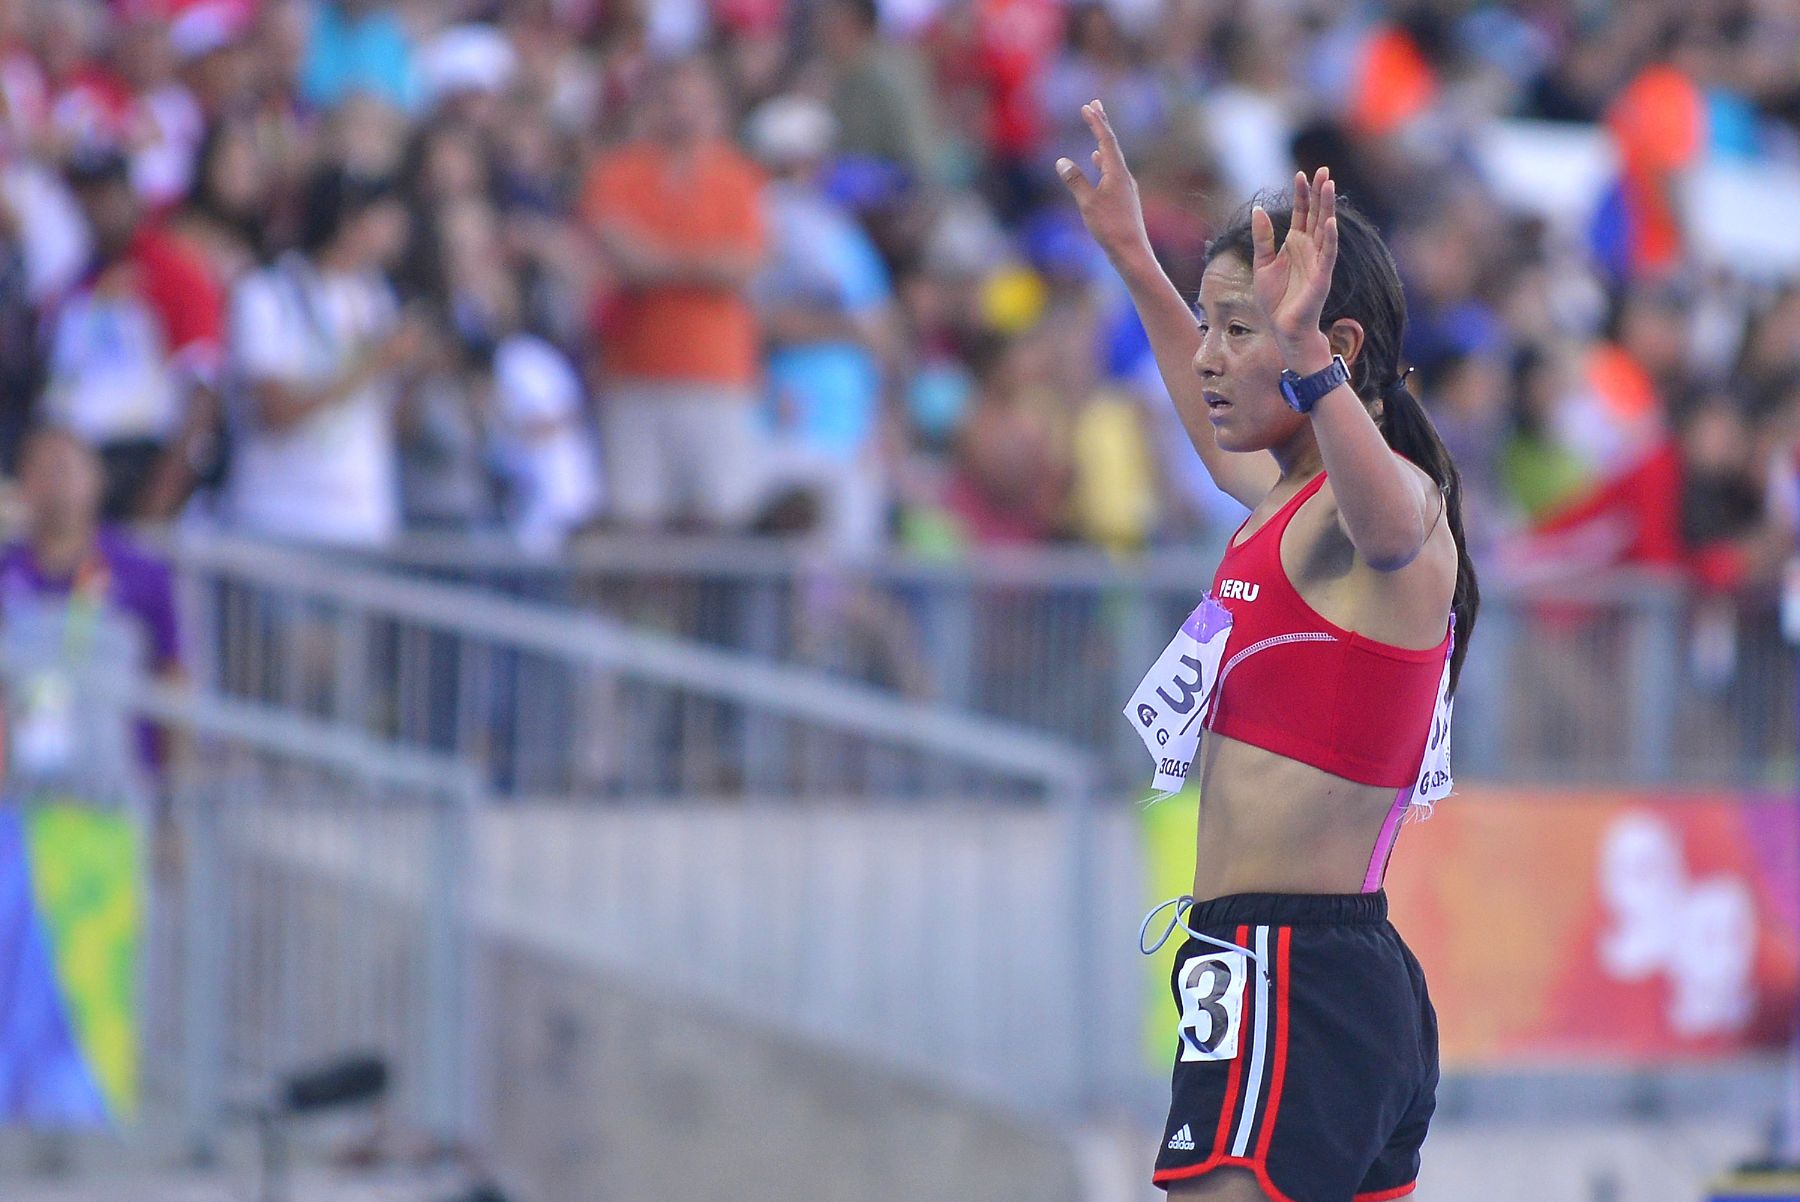 Inés Melchor obtiene su segunda medalla de oro en Odesur en preuba de 5000 metros planos.
Foto: ANDINA/Difusión.